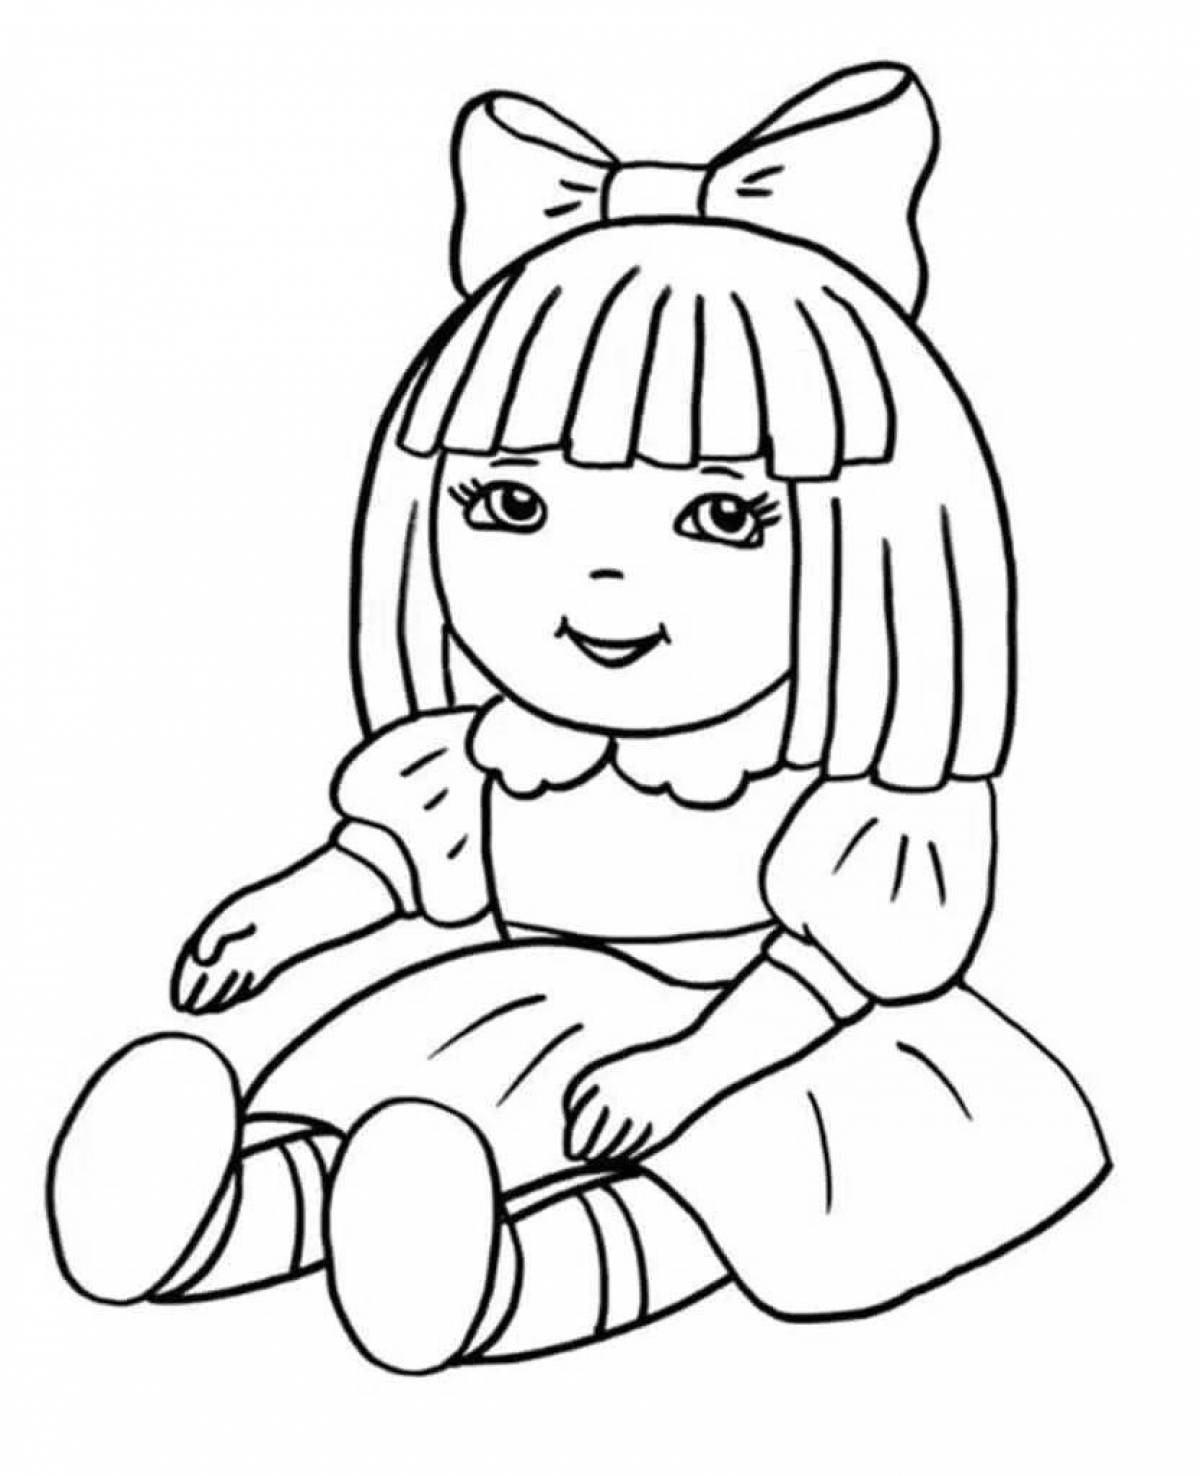 Легкий рисунок куклы. Раскраска кукла. Раса кукла. Кукла раскраска для детей. Раскраска куколка.